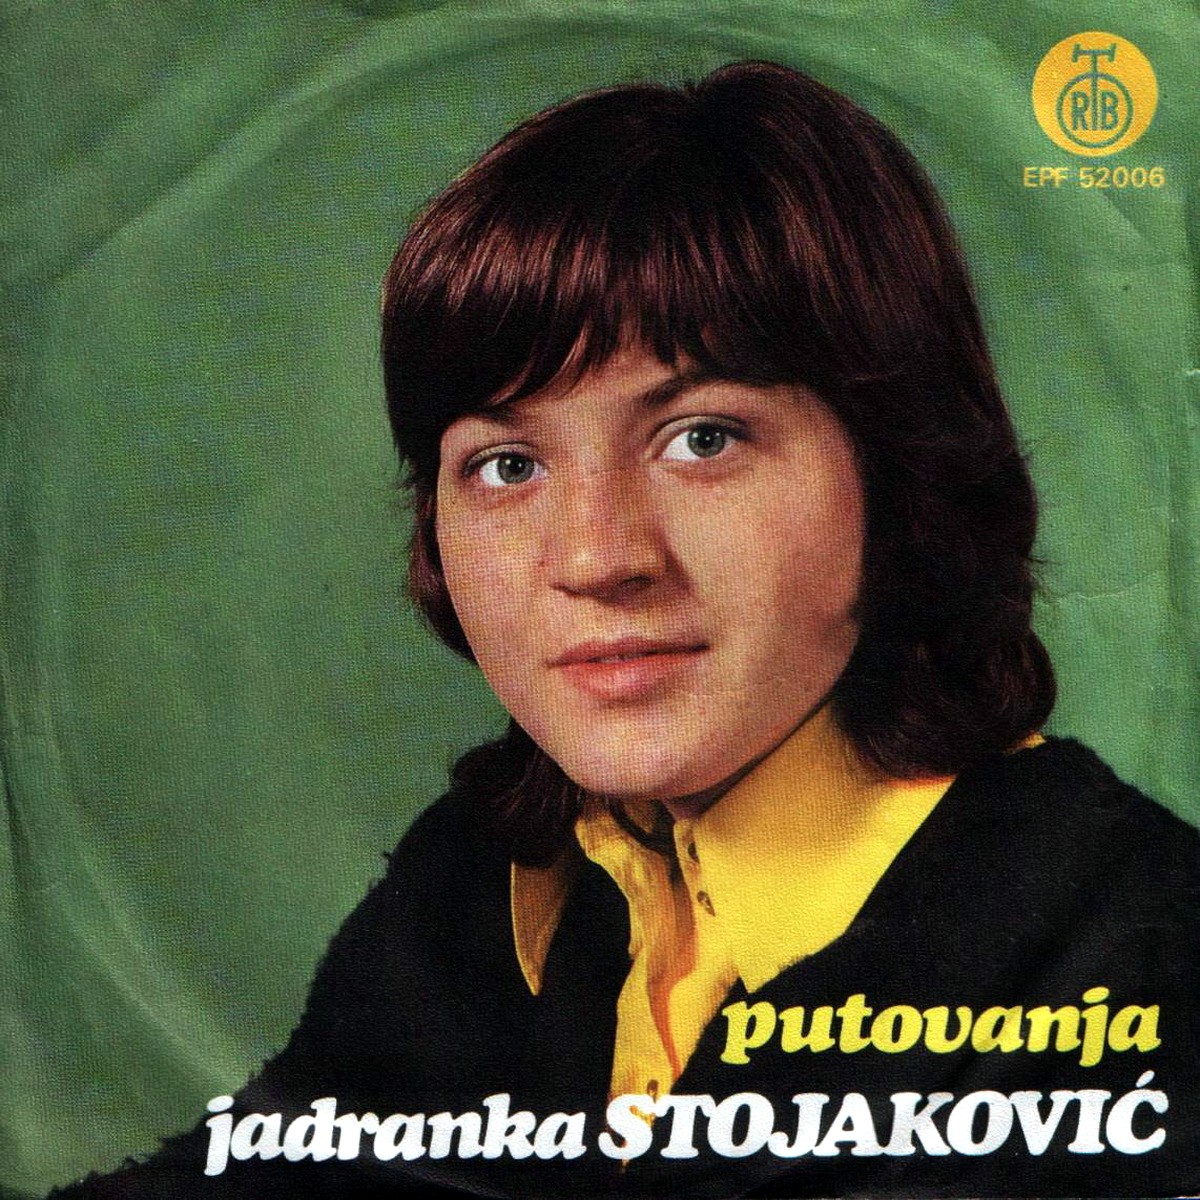 Jadranka Stojakovic 1973 Putovanja a